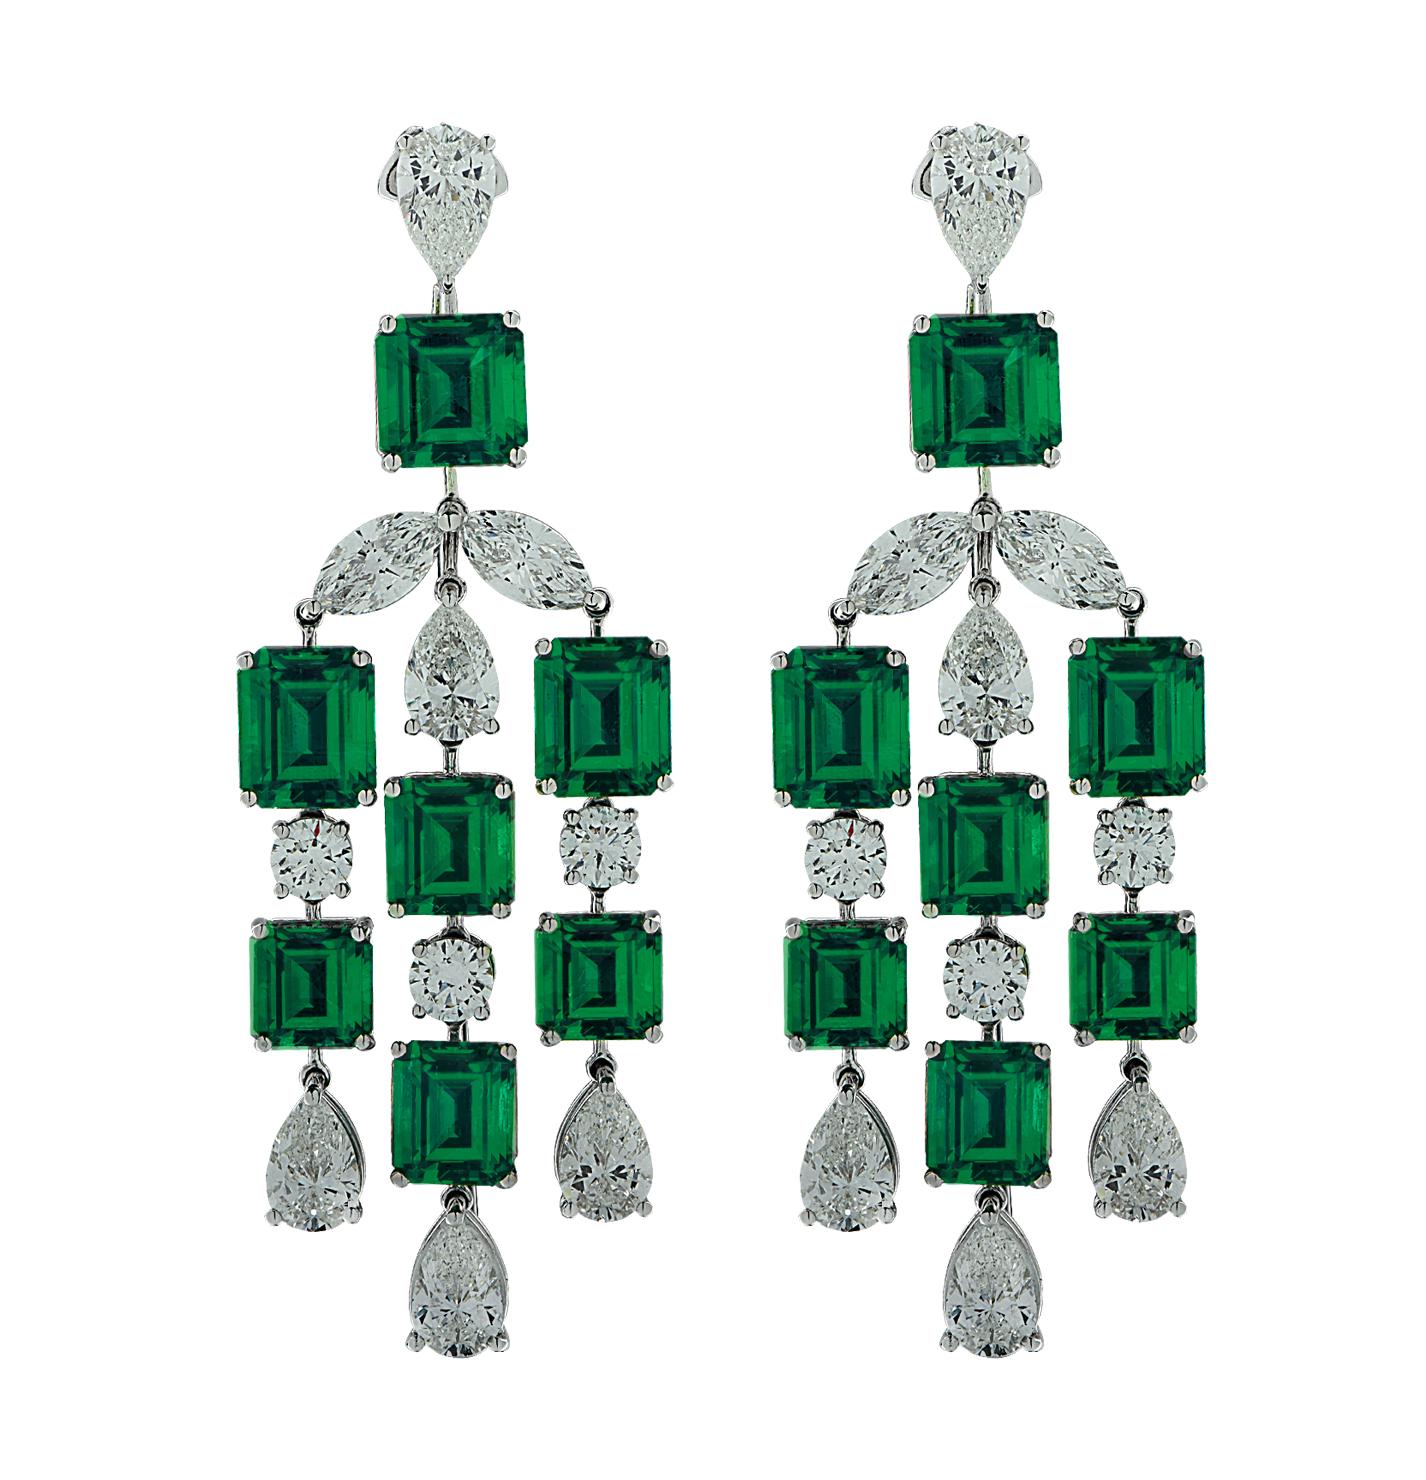 Exquisite Diamant- und Smaragd-Ohrringe aus Platin mit 14 Smaragden im Smaragdschliff mit einem Gesamtgewicht von ca. 23,92 Karat und 20 zertifizierten runden Brillanten, Marquise und birnenförmigen Diamanten mit einem Gesamtgewicht von ca. 12,01